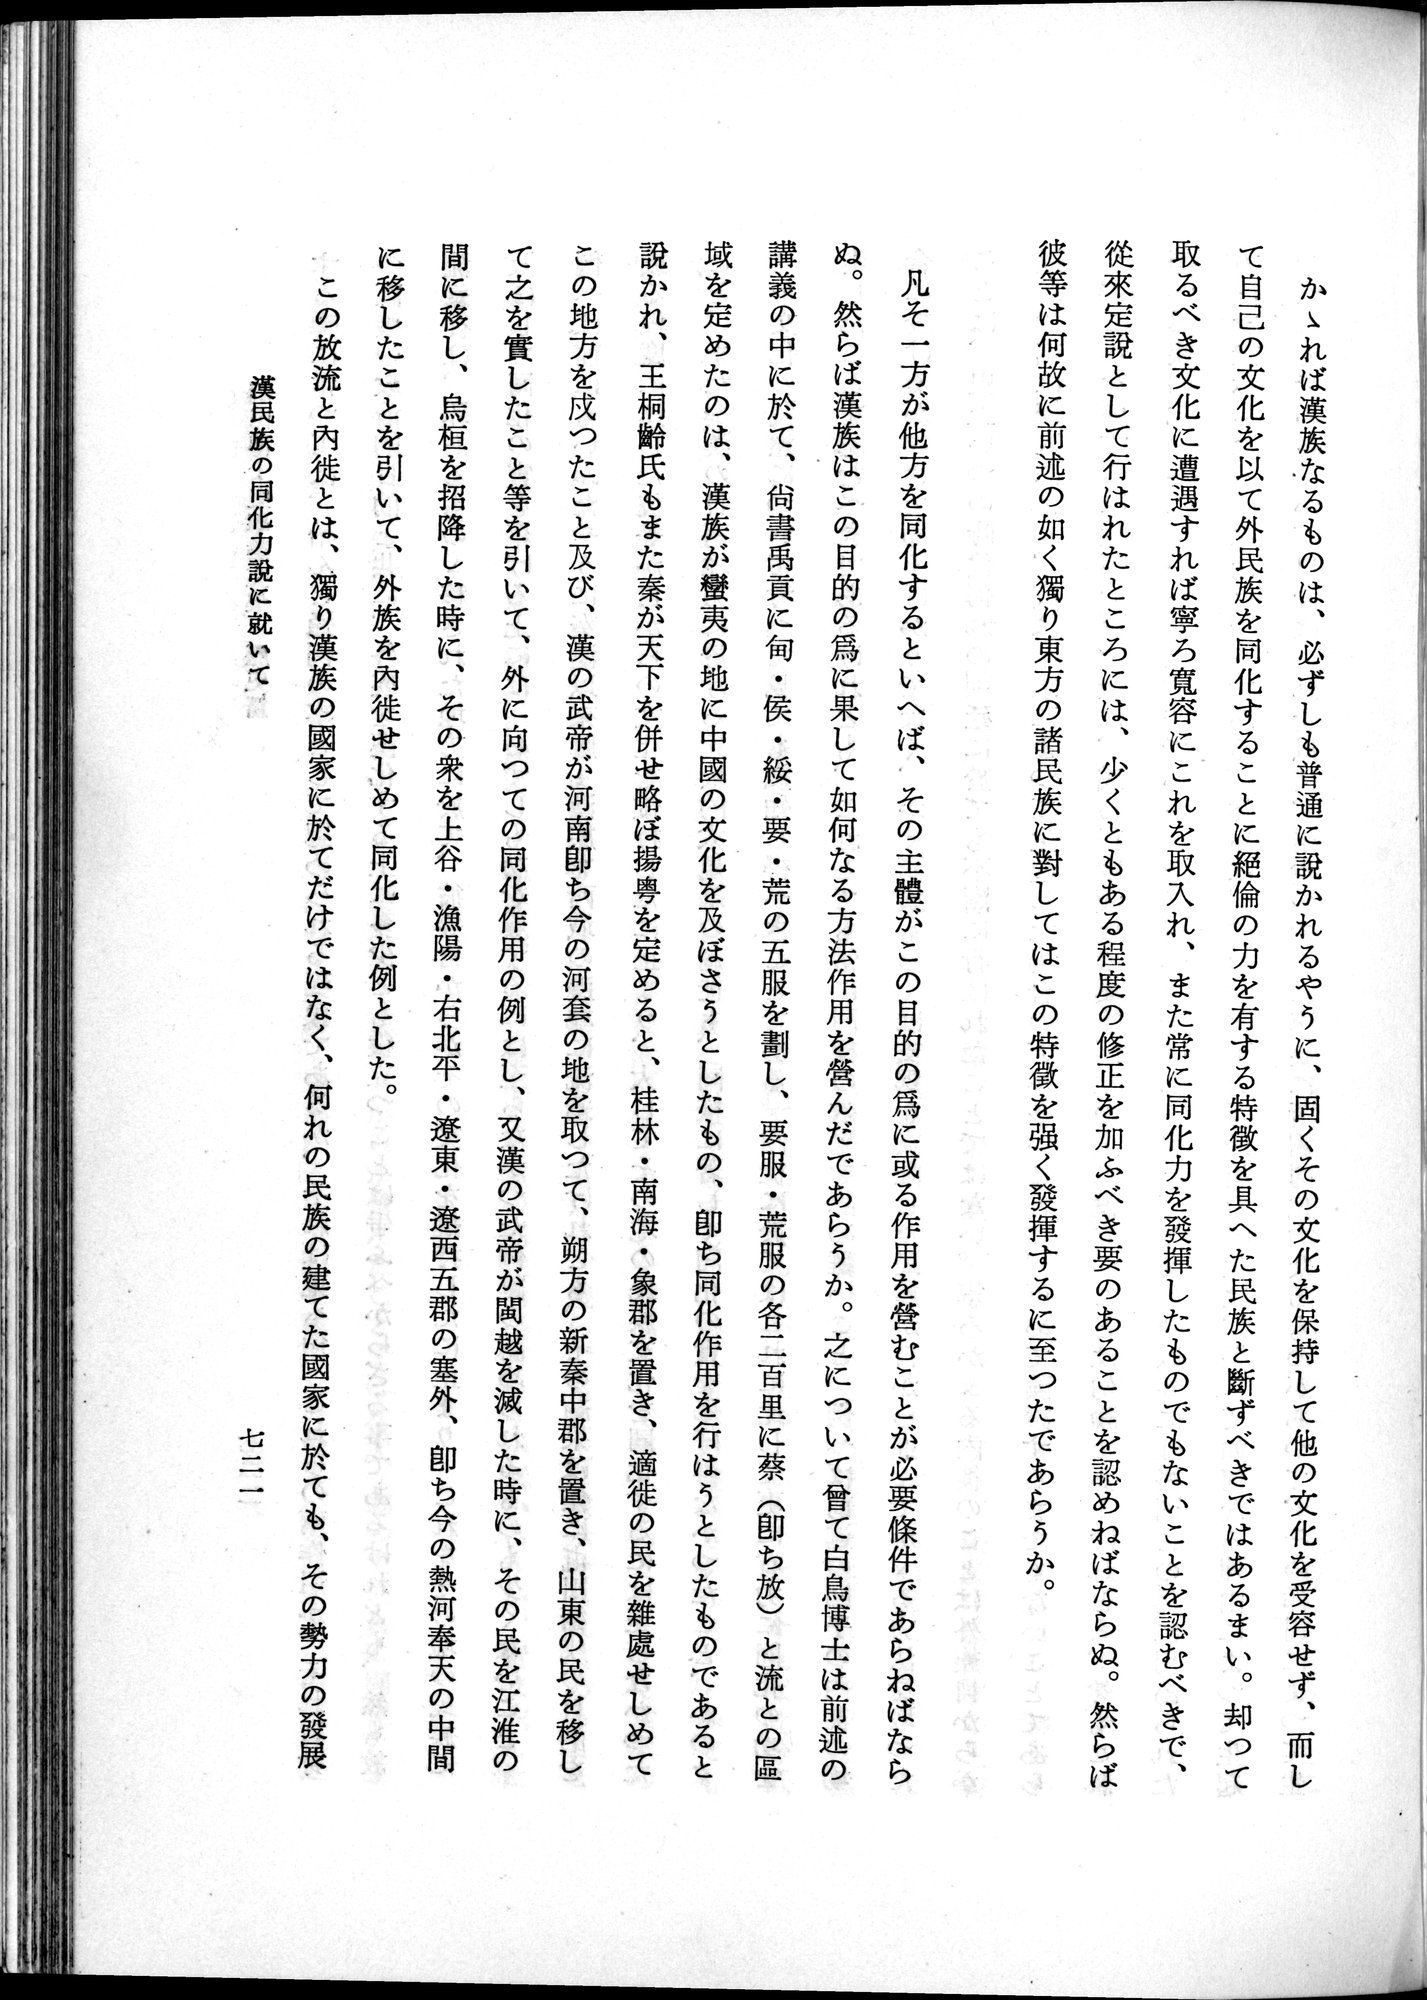 羽田博士史学論文集 : vol.1 / Page 759 (Grayscale High Resolution Image)